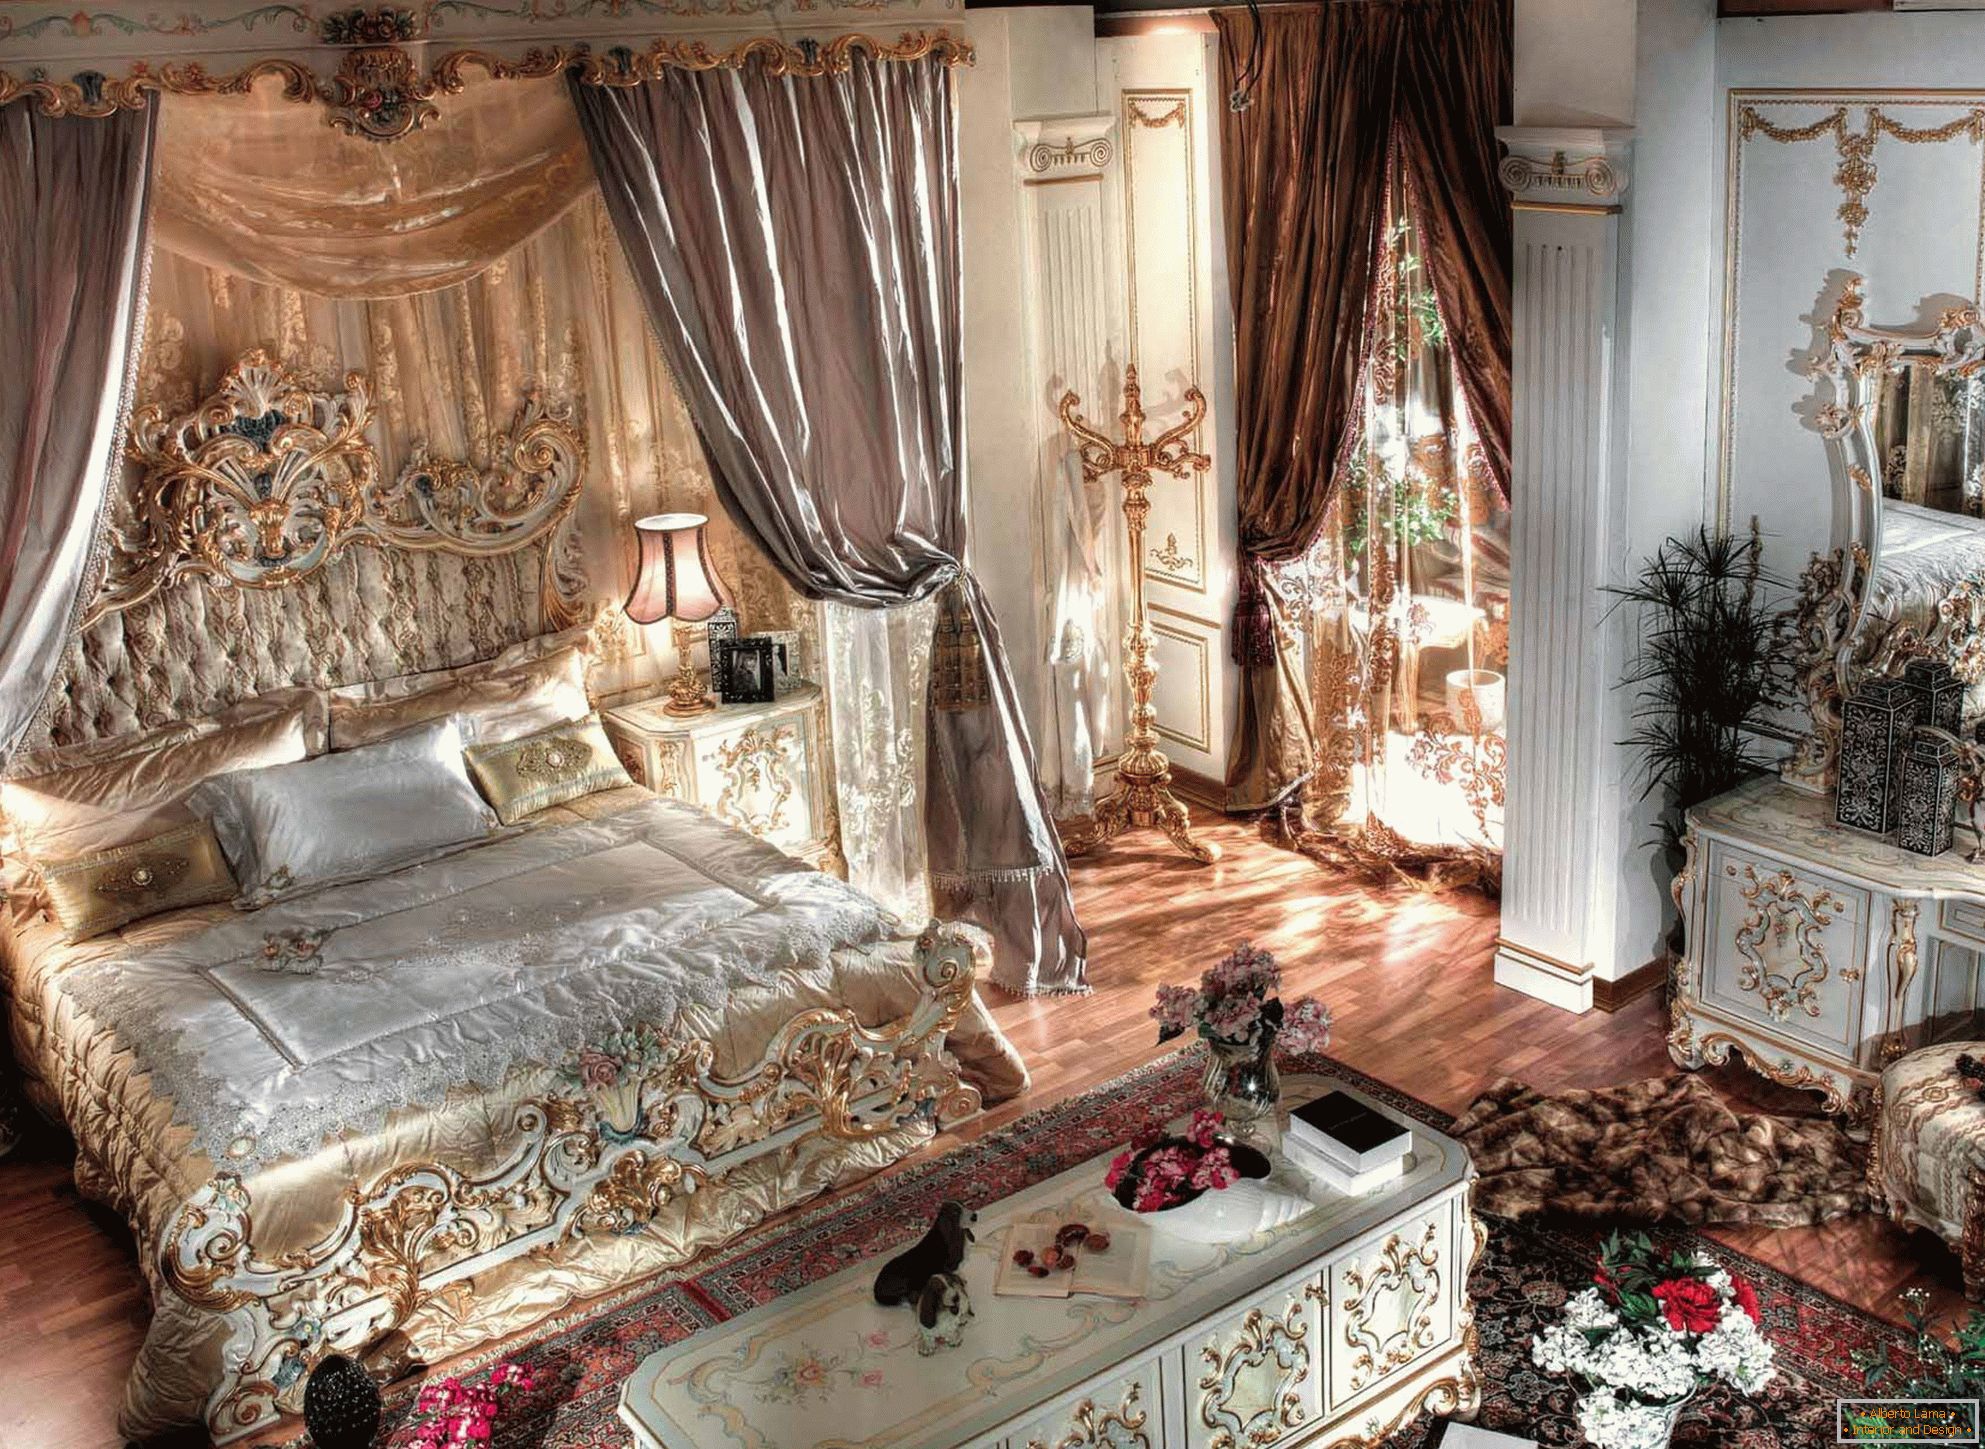 Luksuzna barokna spavaća soba sa visokim plafonima. U centru kompozicije nalazi se masivni ležaj od drveta sa izrezanim leđima.